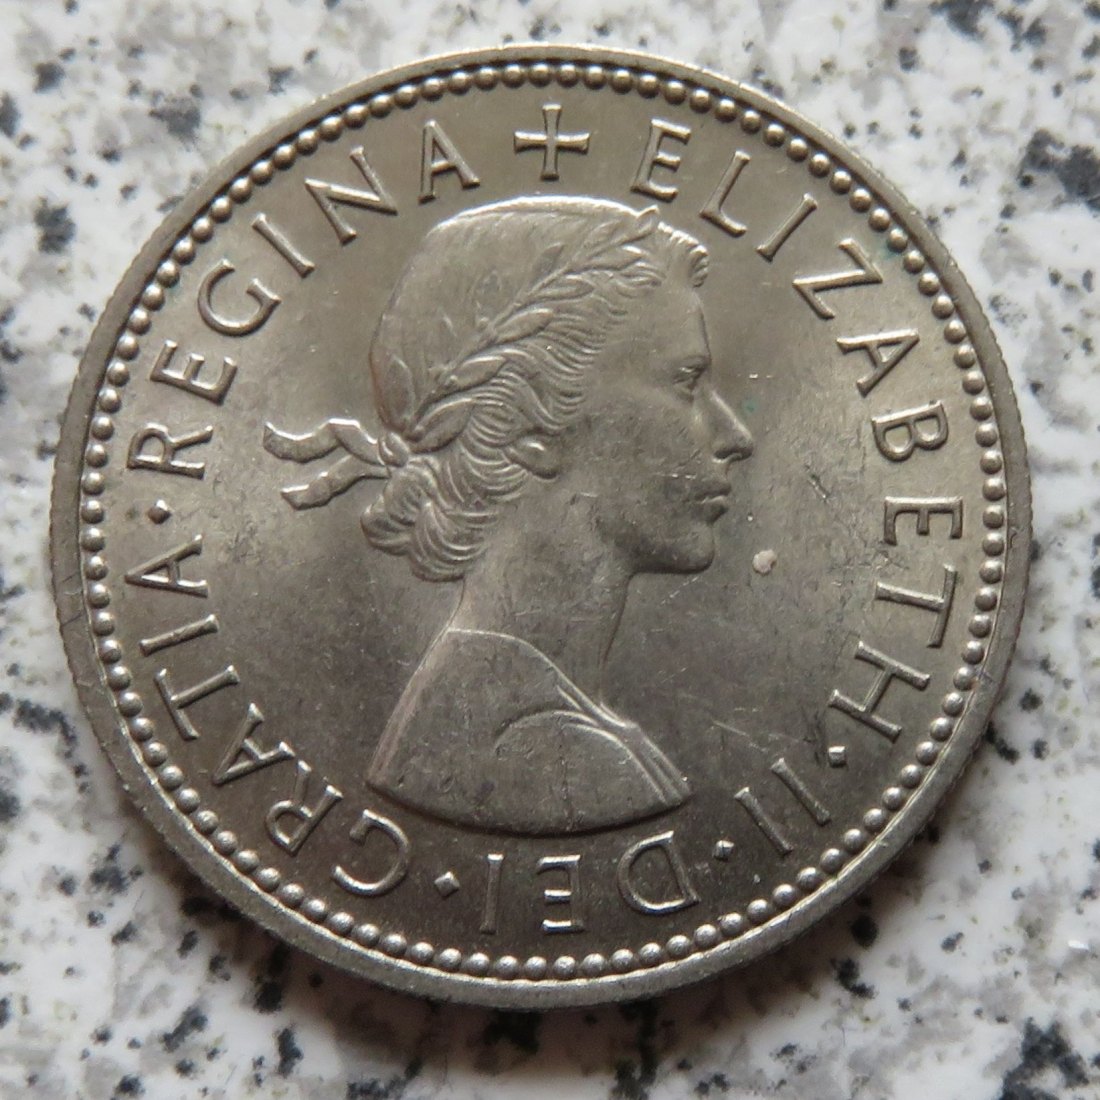  Großbritannien 1 Shilling 1963, Schottisch, Erhaltung   